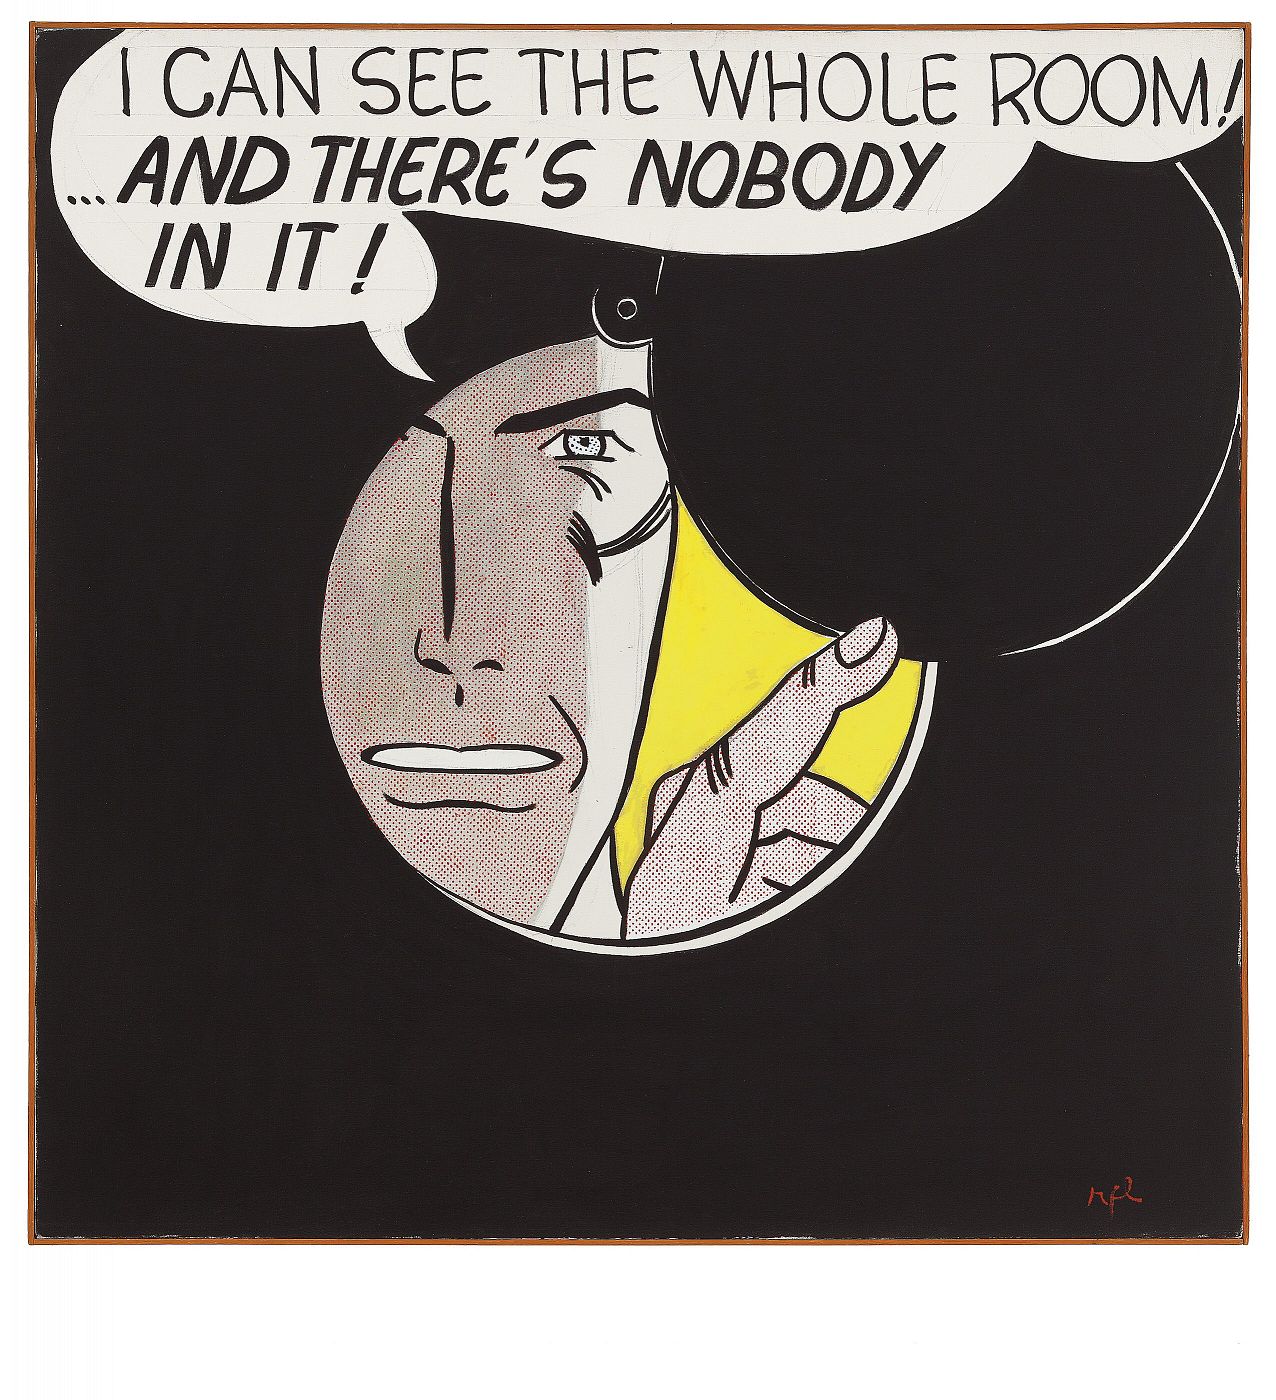 Fragmento de  'I can see the whole room, and there's nobody in it!' vendida hoy por un precio final de 43,2 millones de dólares.